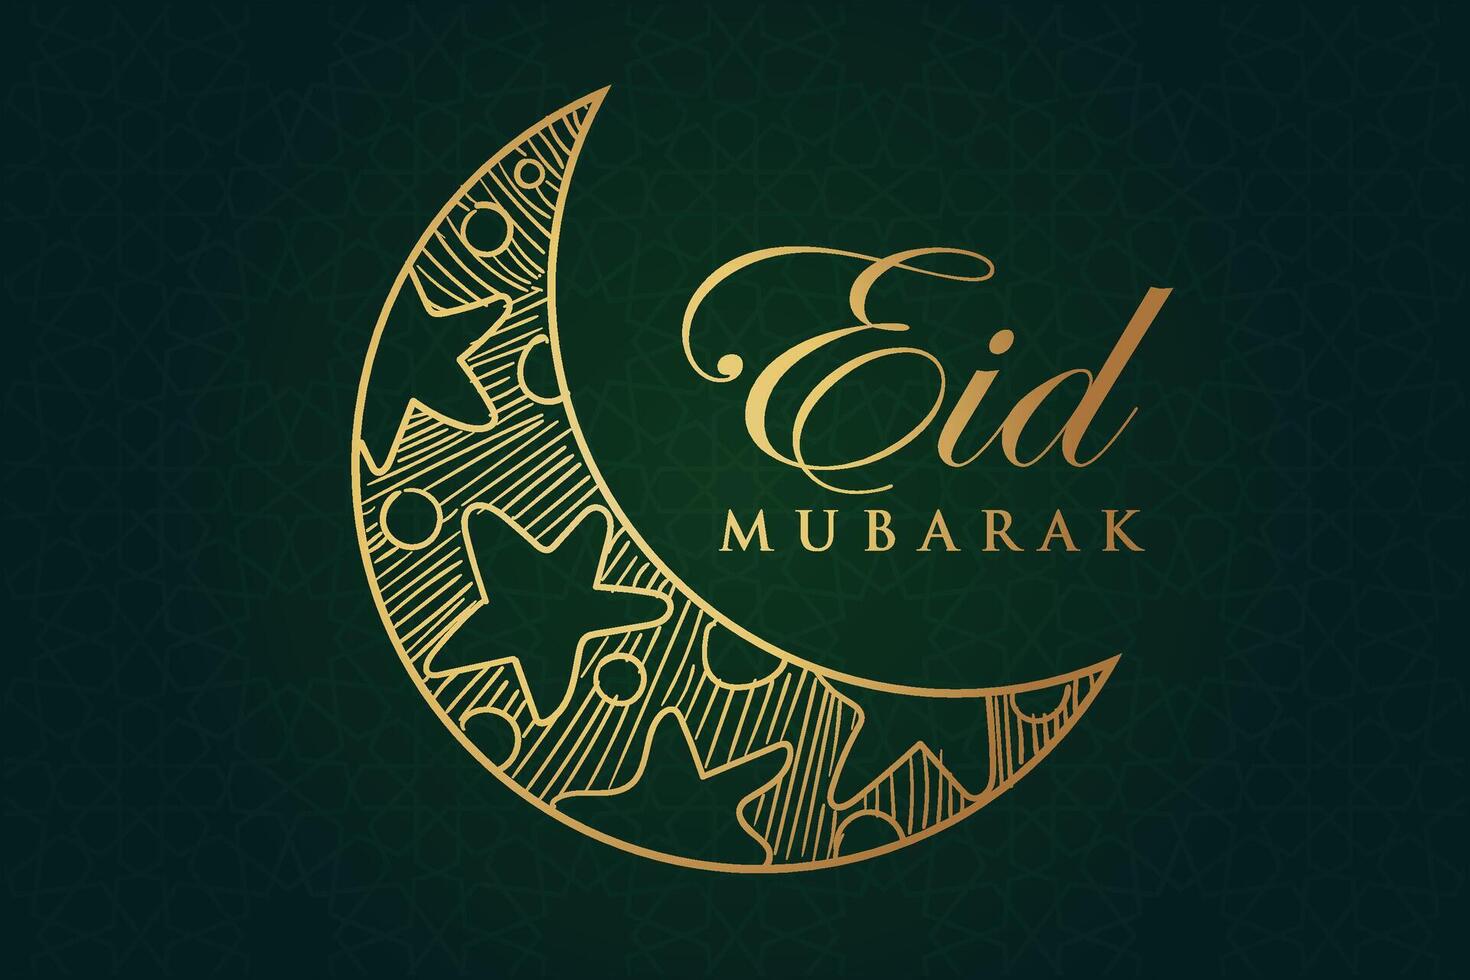 ramadan, eid al fitr, islamique calendrier Contexte salutation carte avec croissant lune décoration vecteur